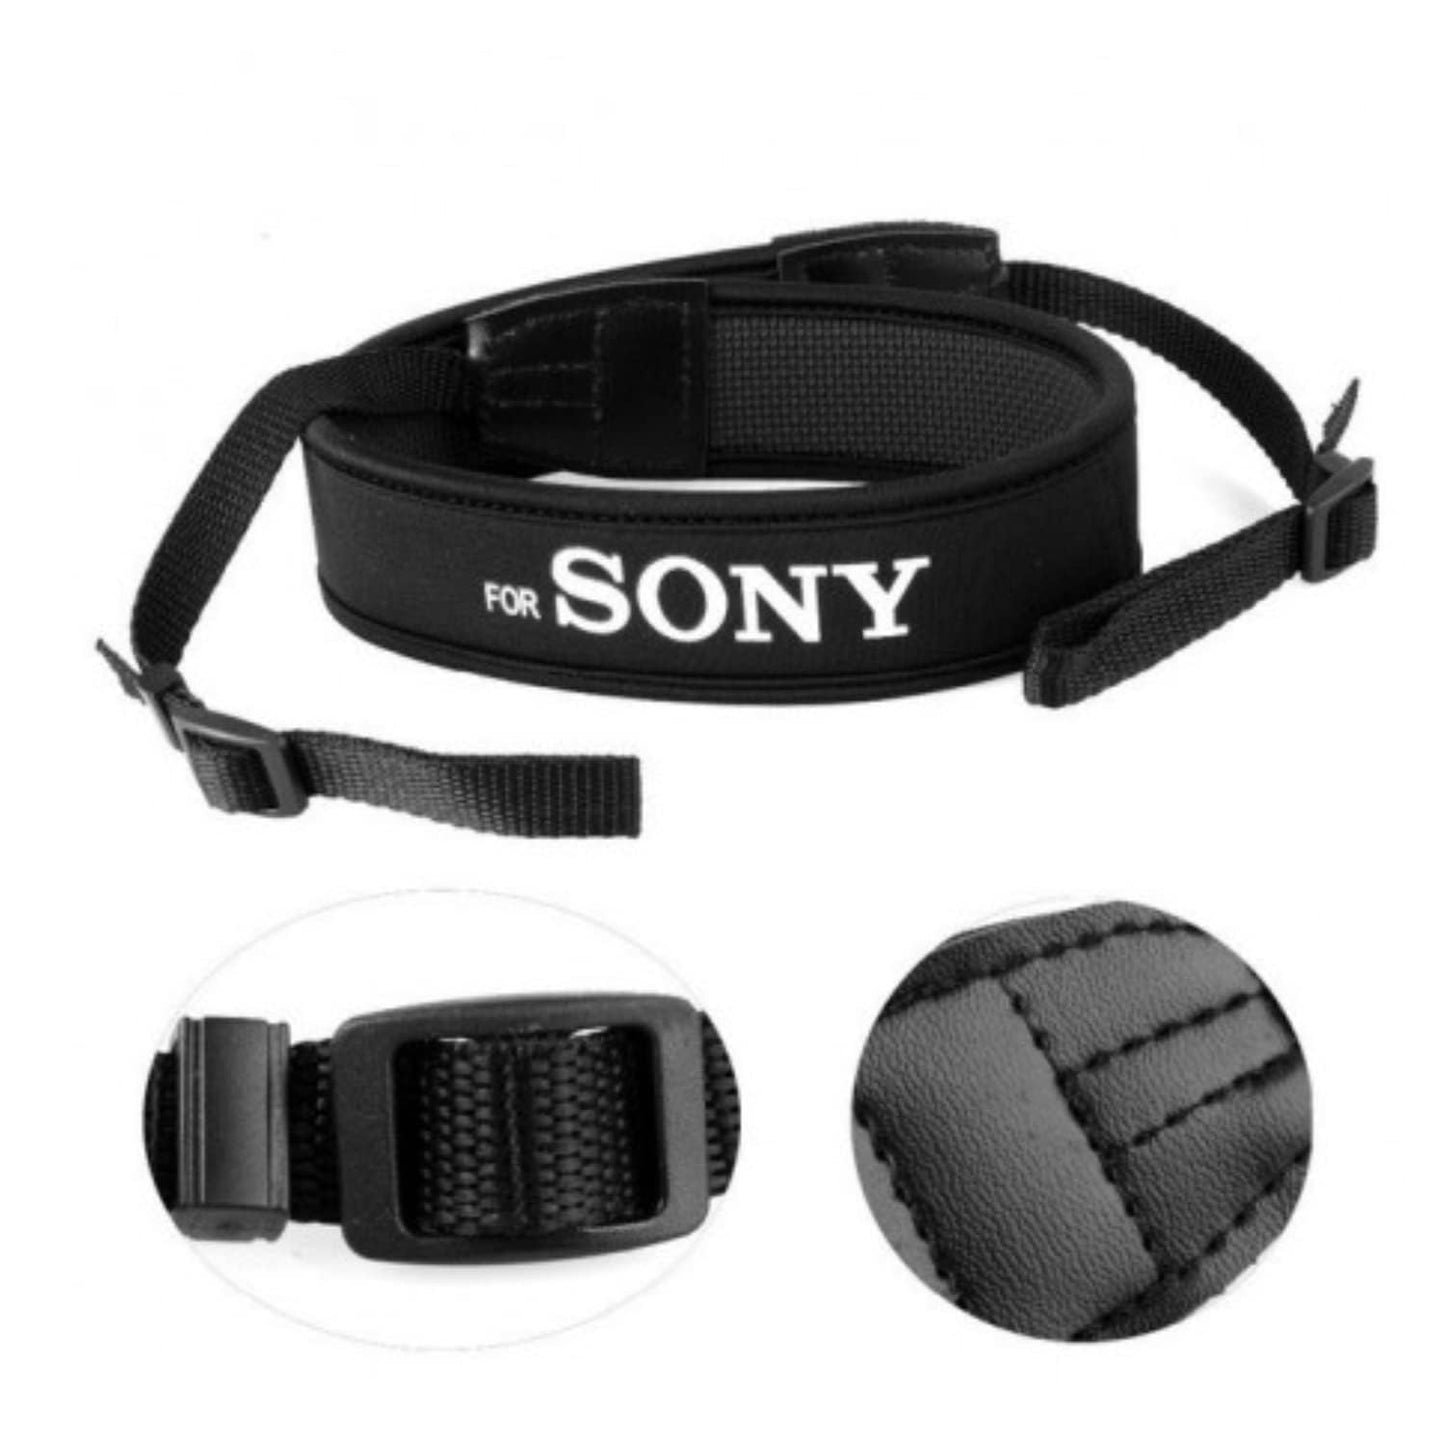 Sony Camera Belt Neck,Shoulder Elastic Strap Belt for All Series DSLR, SLR Cameras Work microfiber cloth